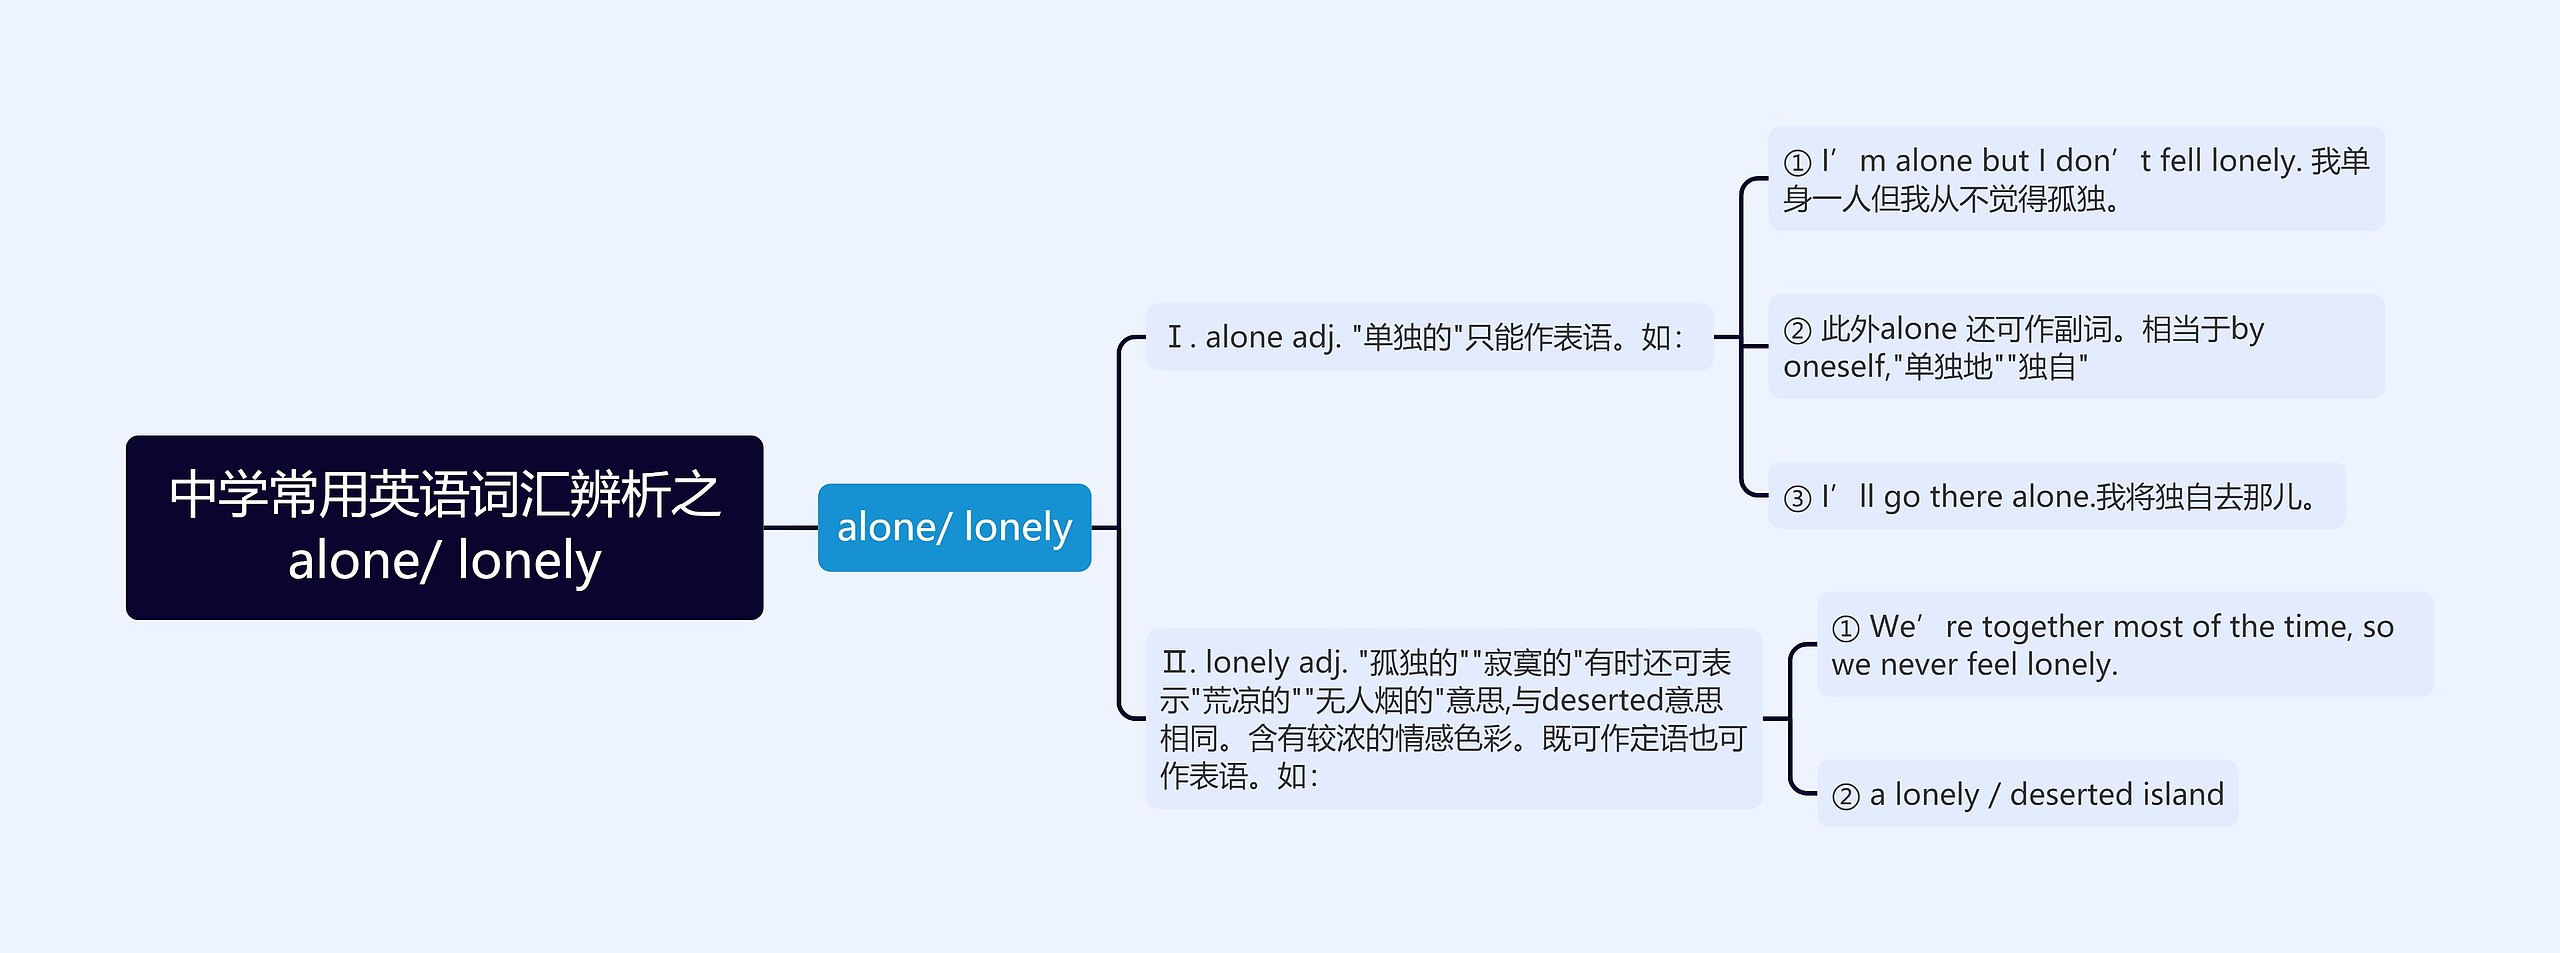 中学常用英语词汇辨析之alone/ lonely思维导图